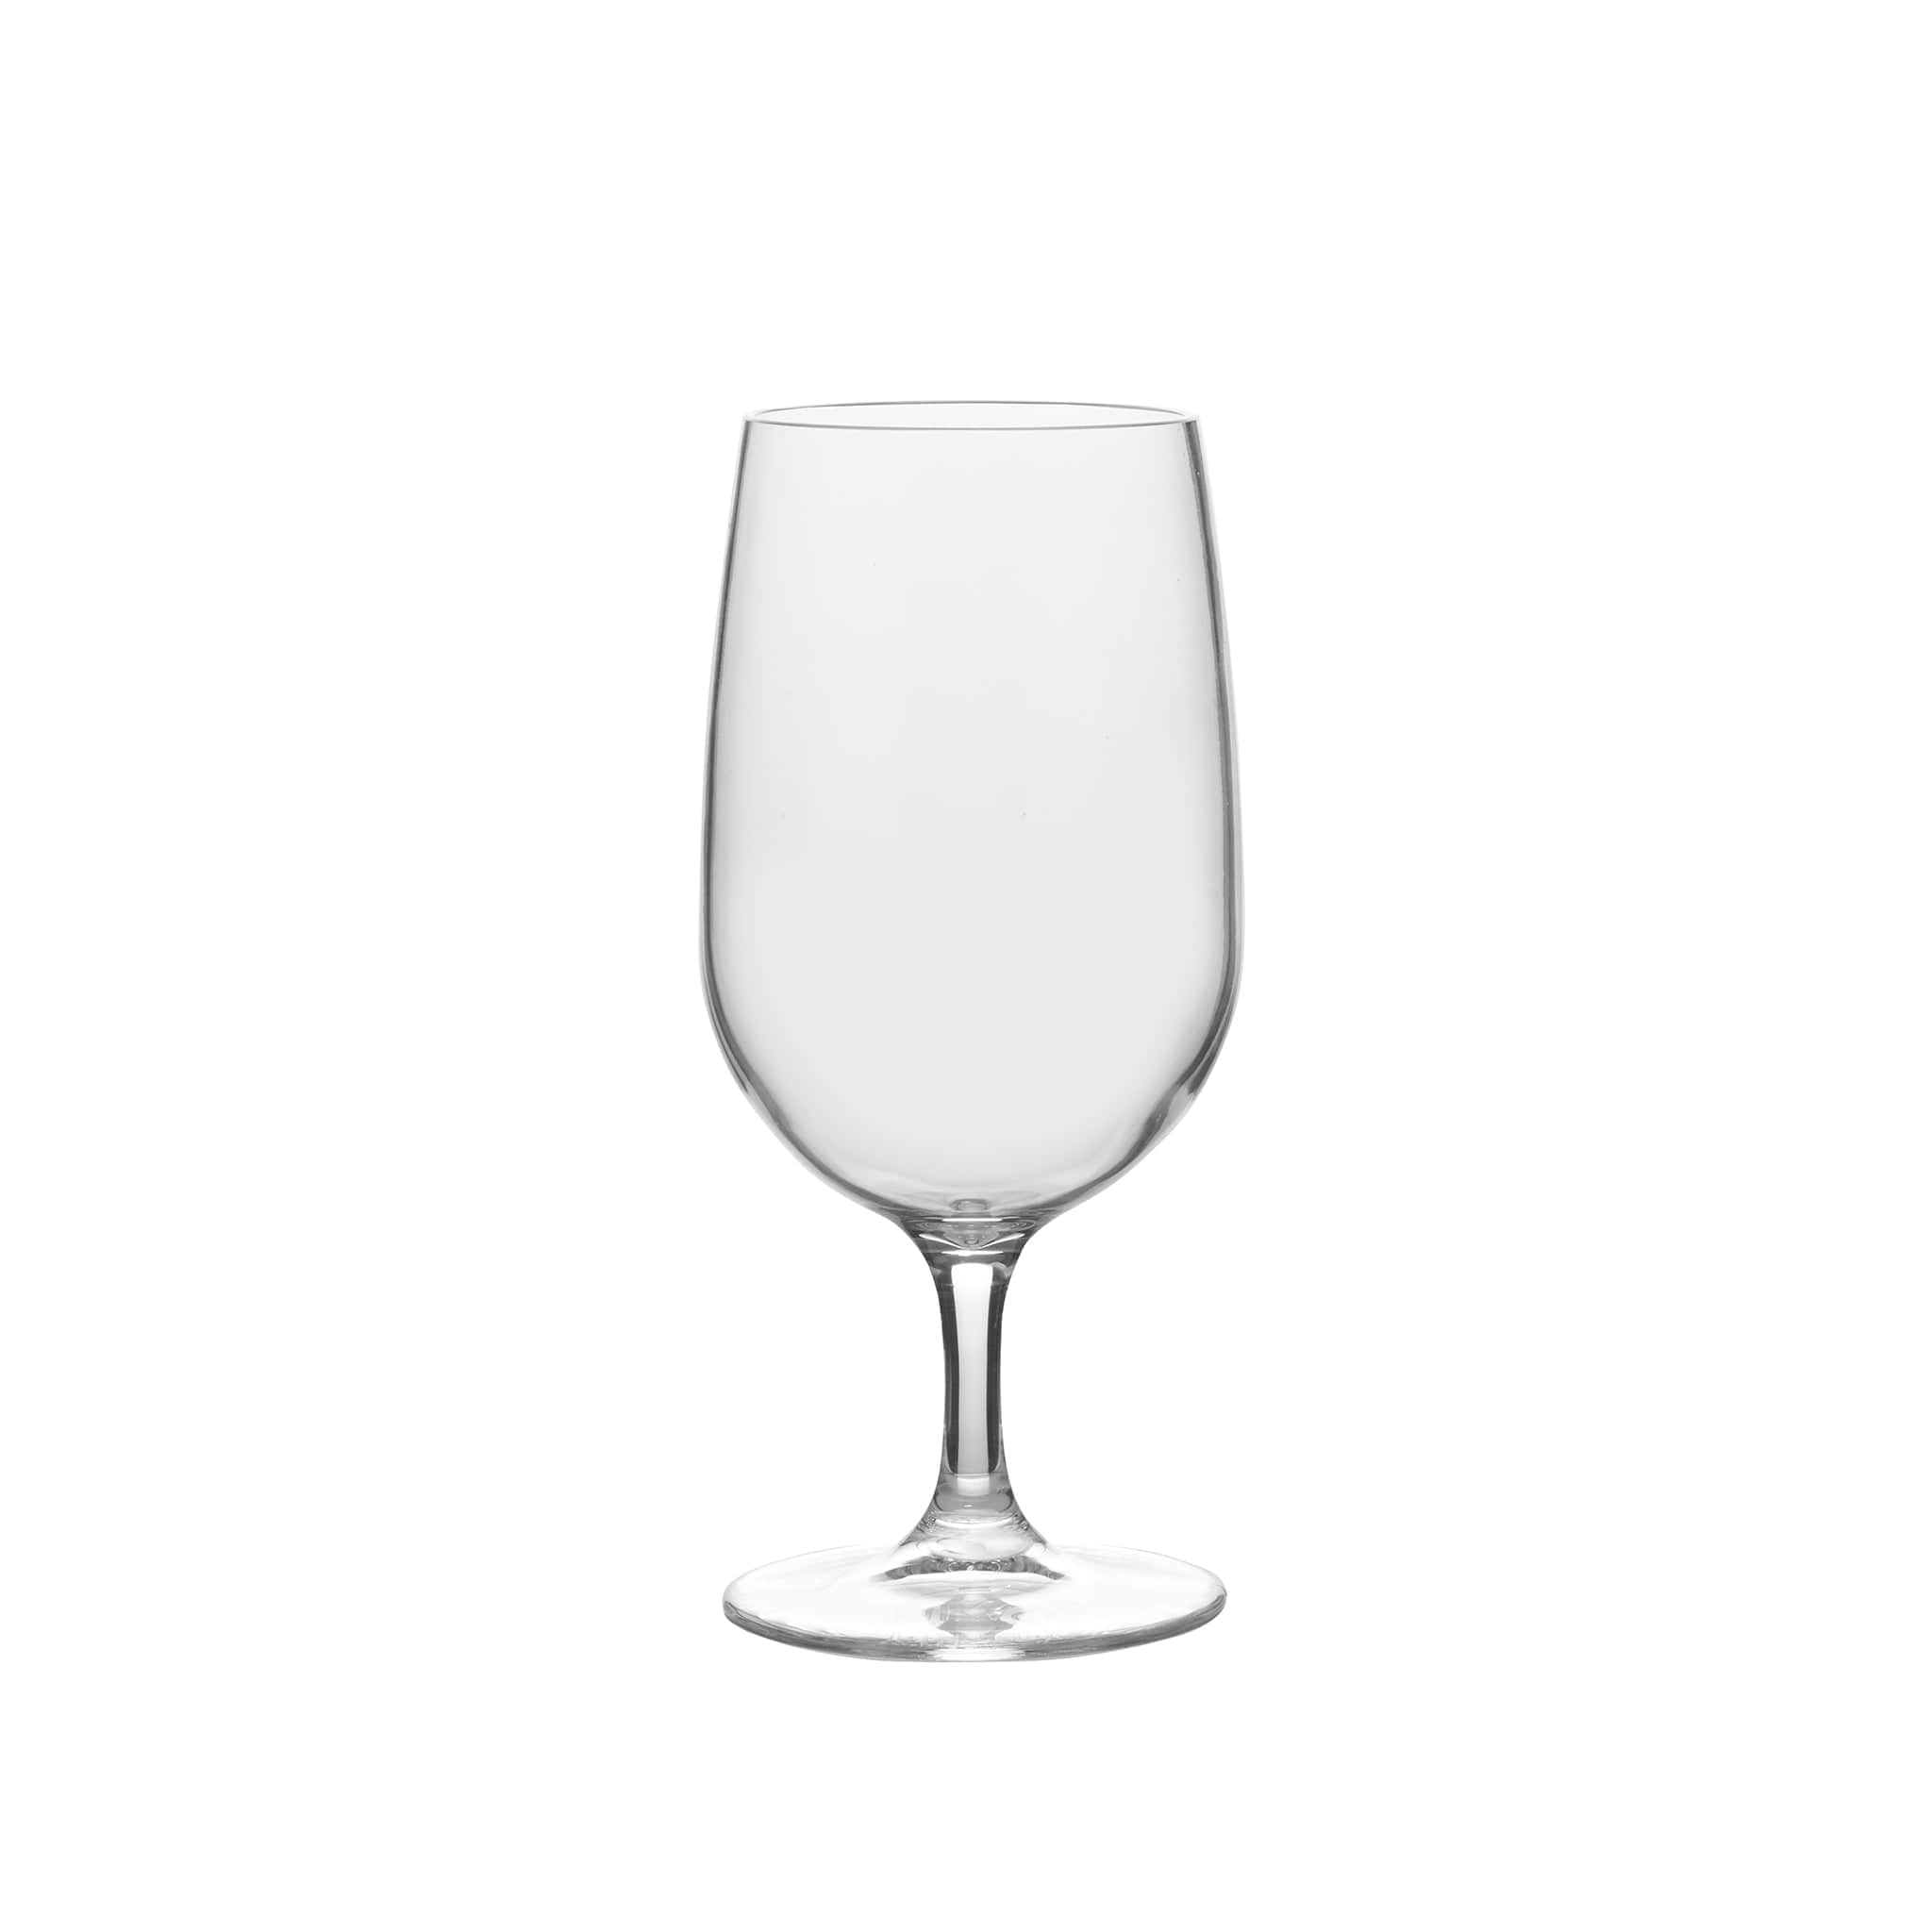 STORSINT Martini glass, clear glass, 8 oz - IKEA